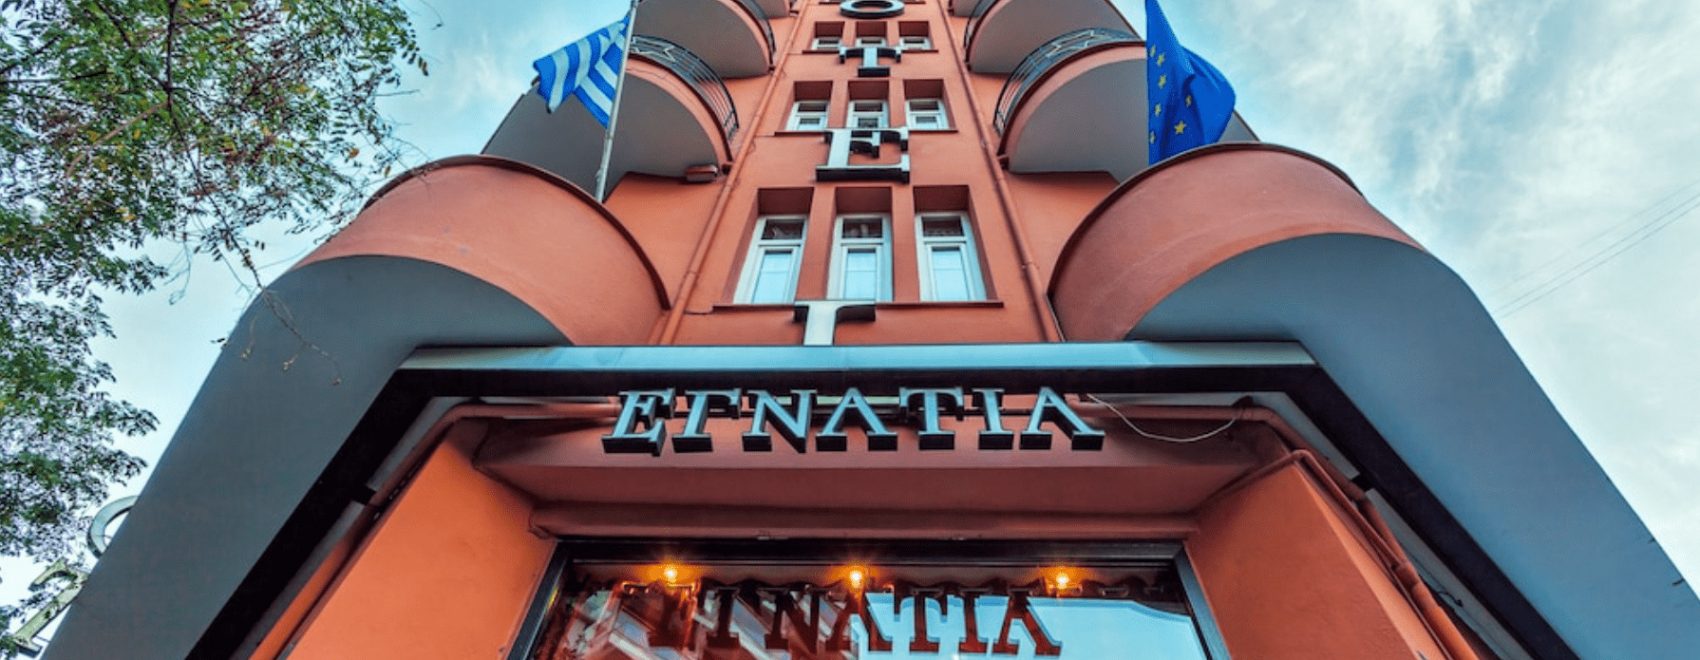 Frontfassade eines roten Hauses, steil von unten nach oben fotografiert, Hotel Egnatia